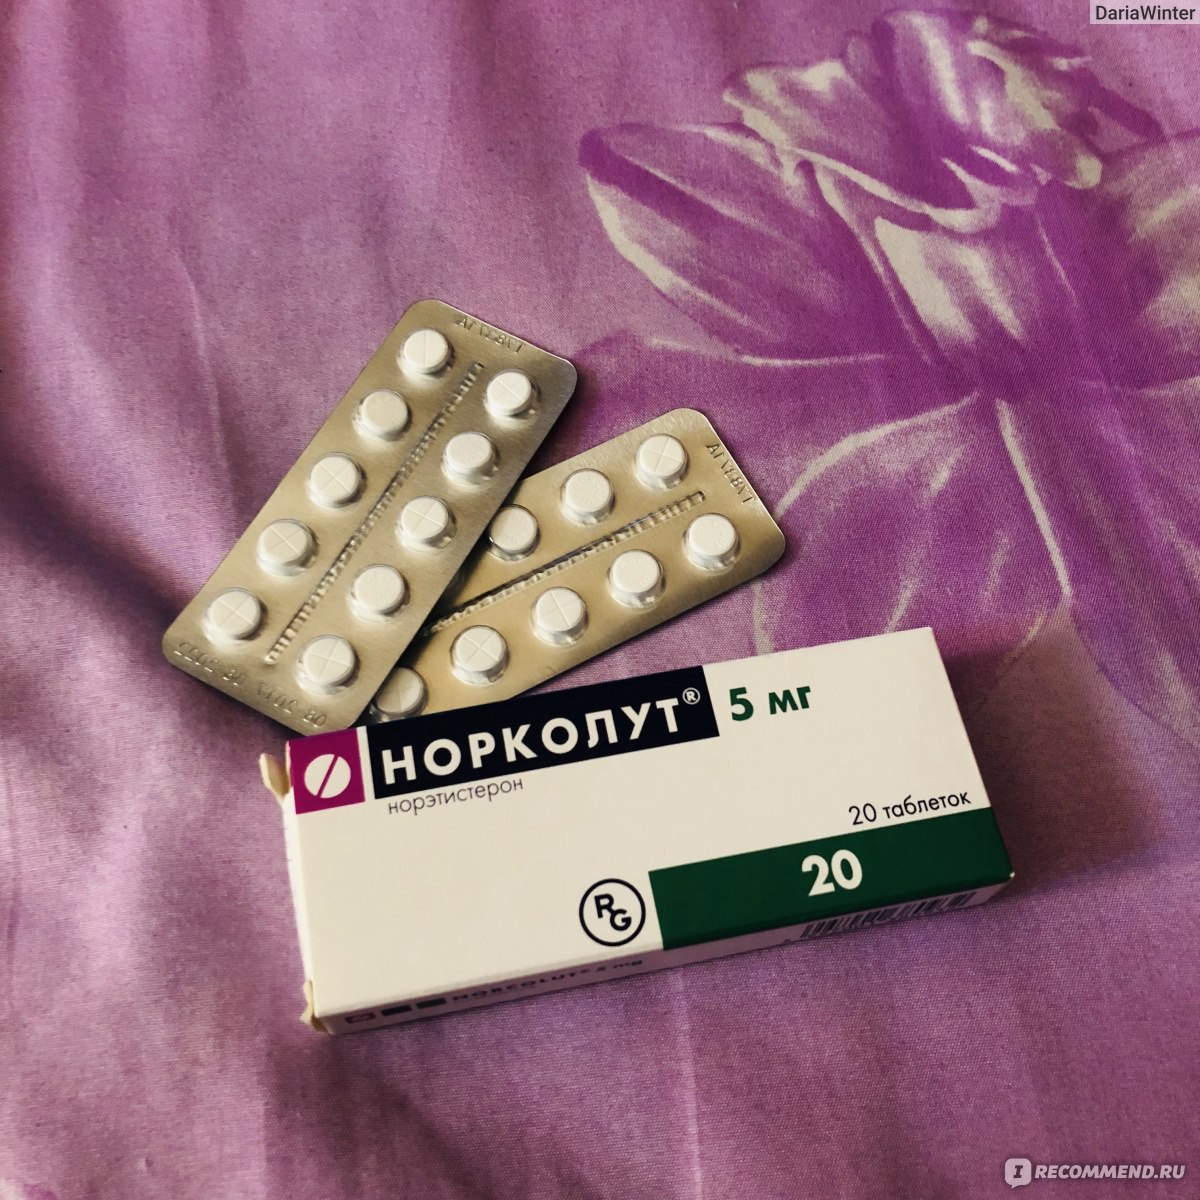 Гормональные препараты Норколут - «Эффективное лечение гиперплазии .